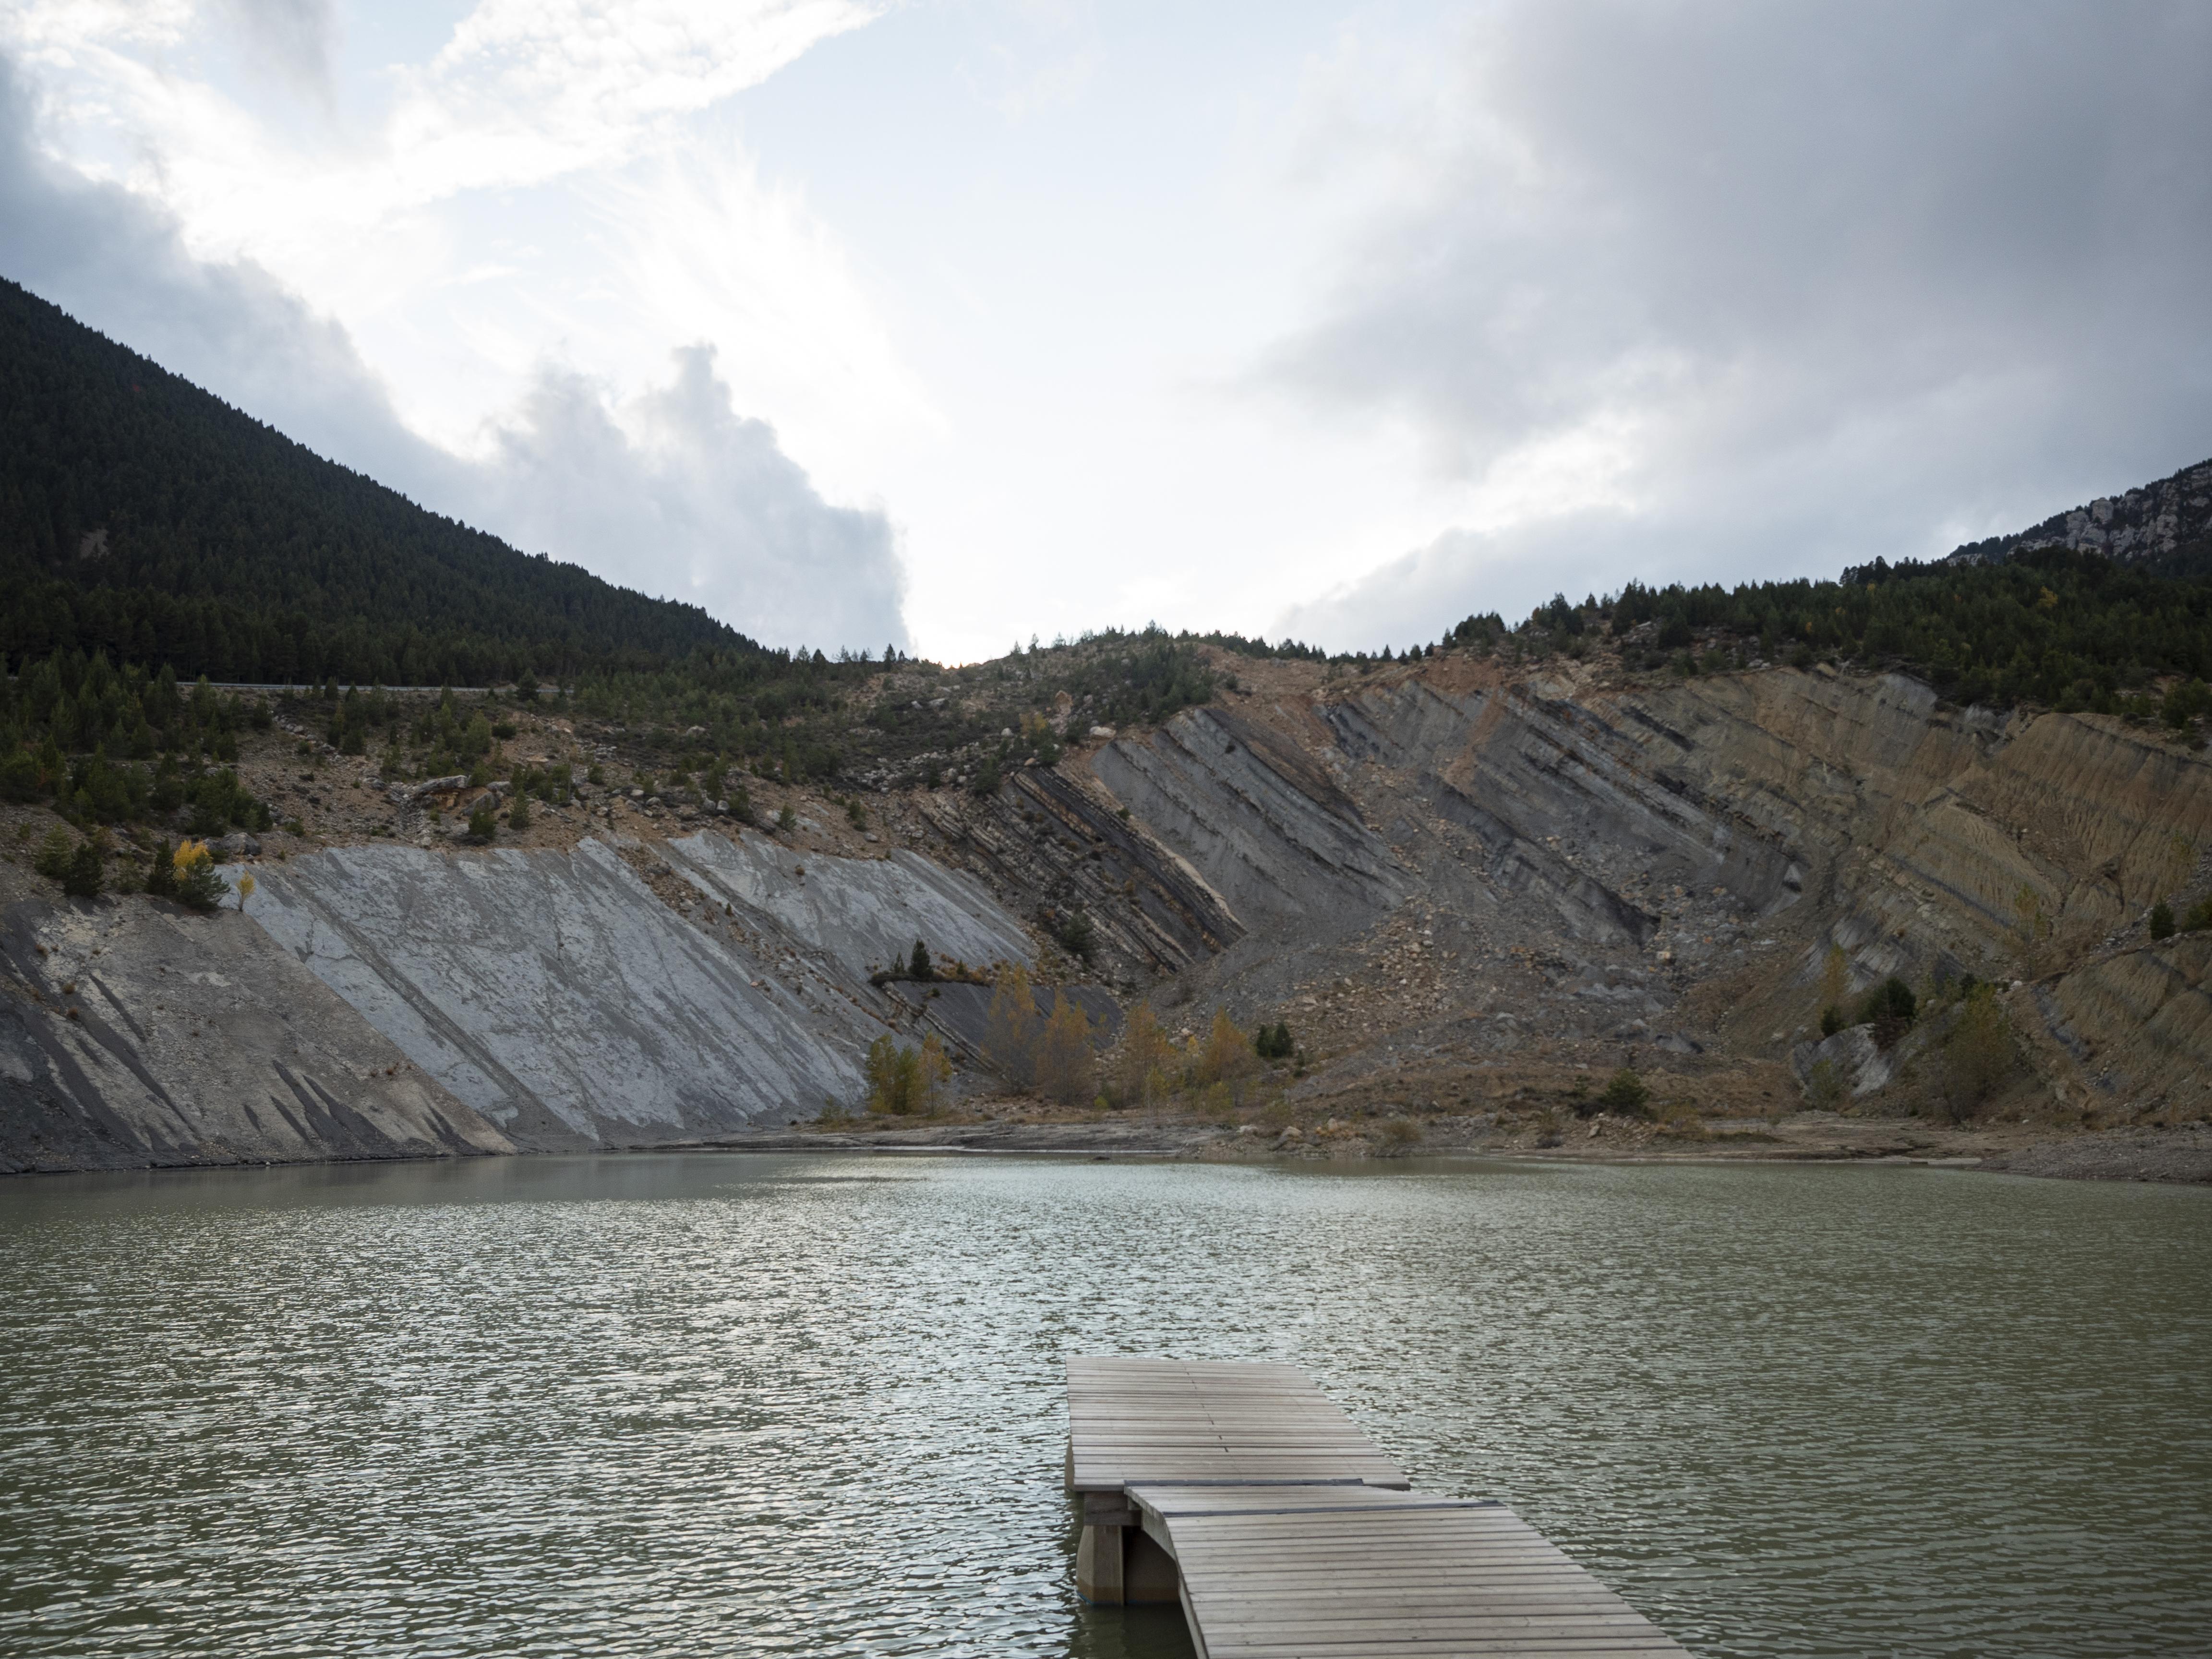 El llac de Tumí, un llac artificial com a conseqüència de l'activitat minera de la zona. FOTO: Anna E. Puig